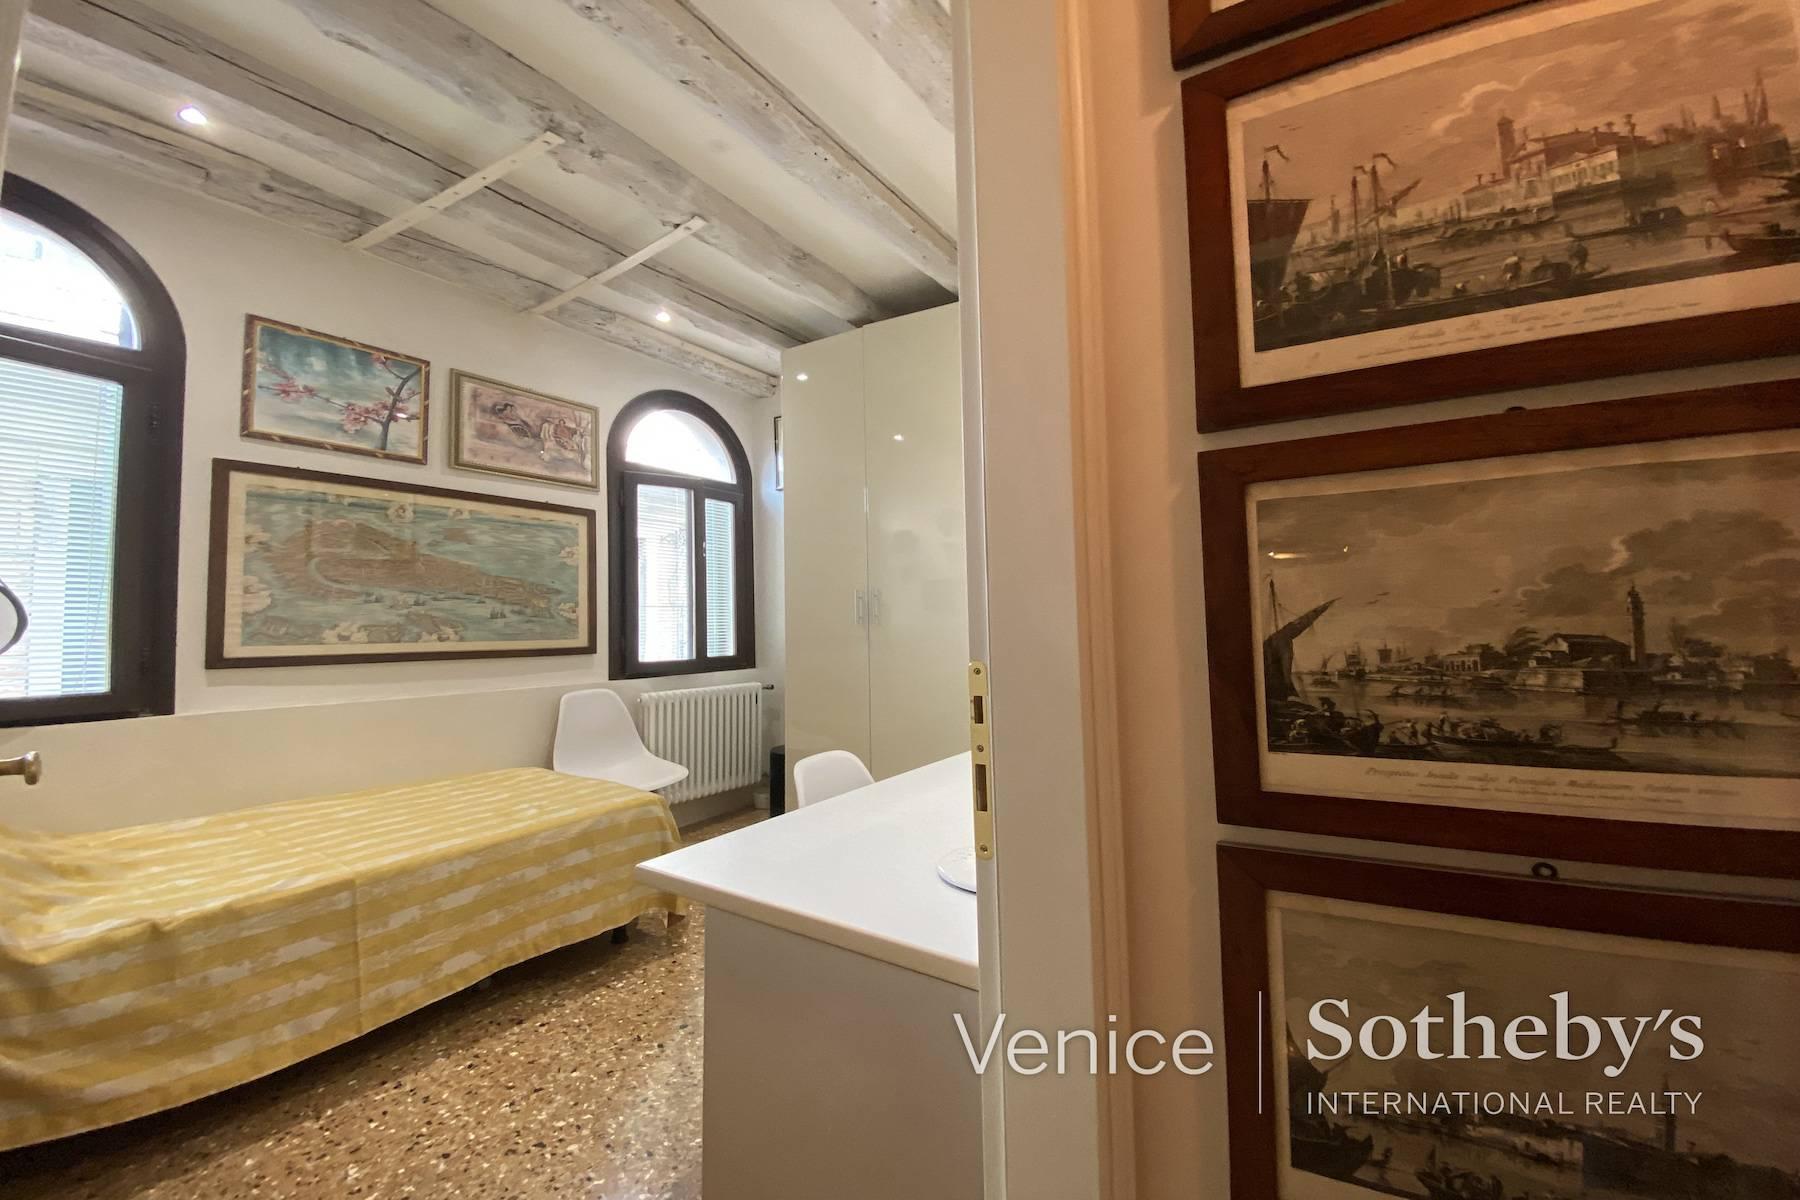 Un charmant appartement mezzanine dans un magnifique palazzetto gothique - 9